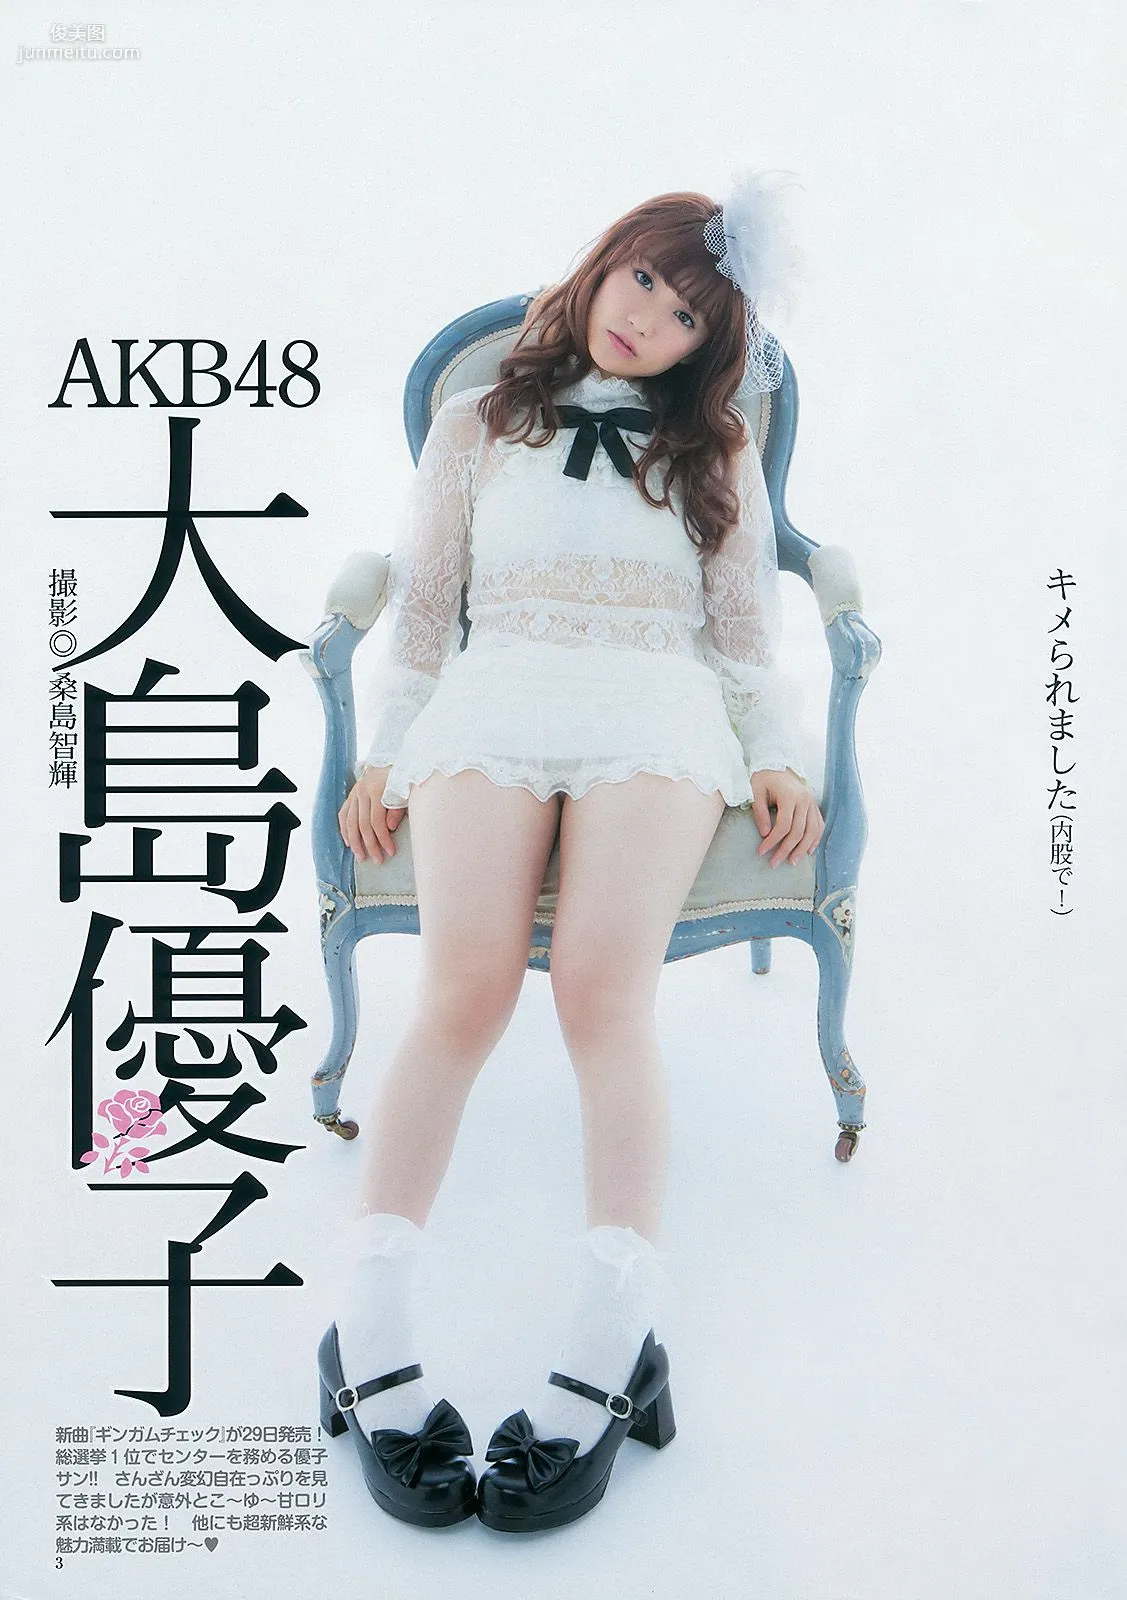 大島優子 乃木坂46 AKB48 ウェイティングガールズ [Weekly Young Jump] 2012年No.40 写真杂志4